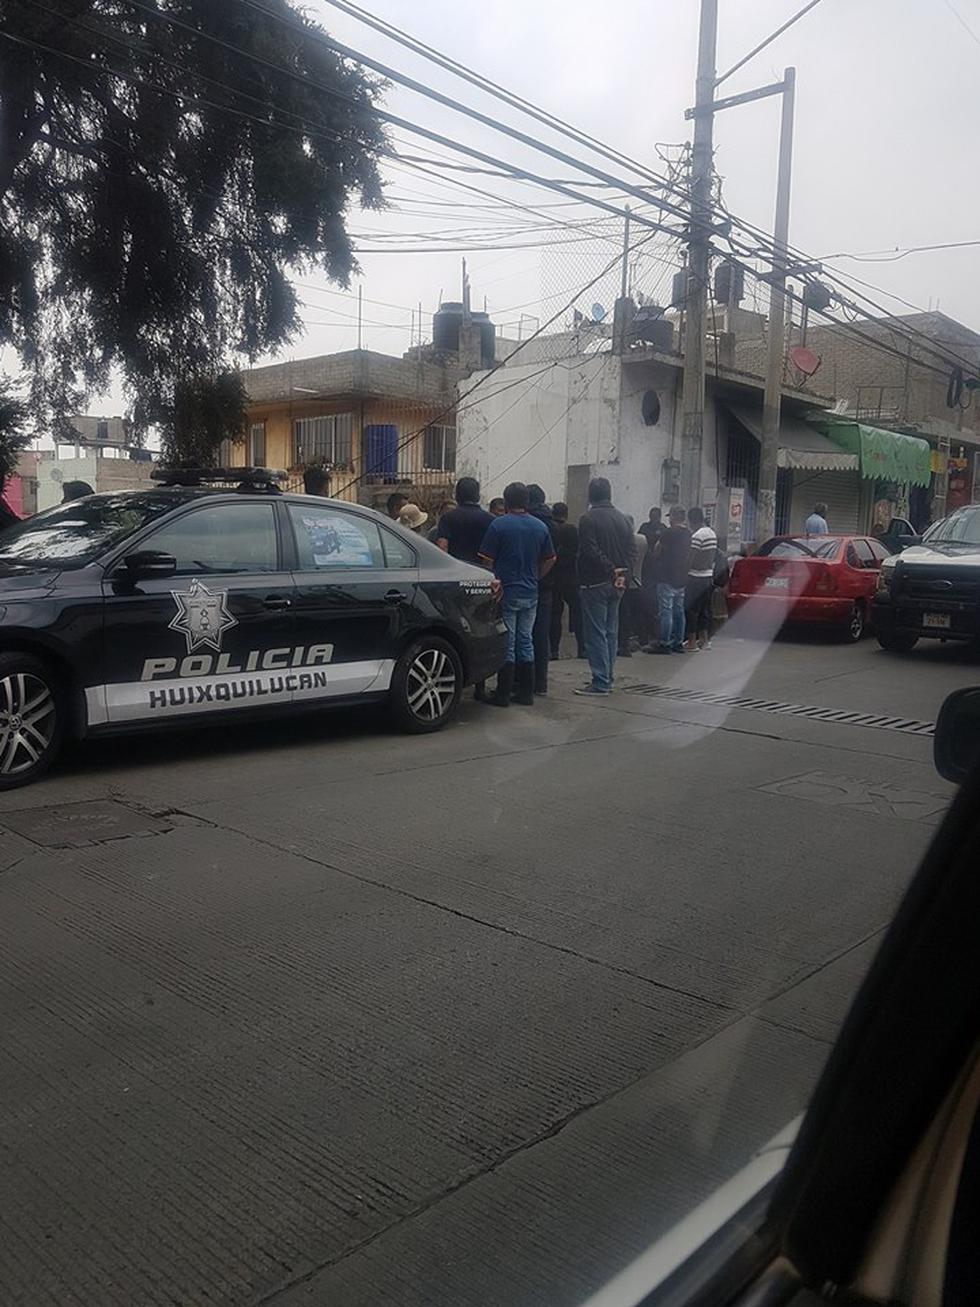 México: Adolescente dispara a su compañero producto del bullying y luego se suicida. (Facebook/Reporte Ciudadano Huixquilucan)